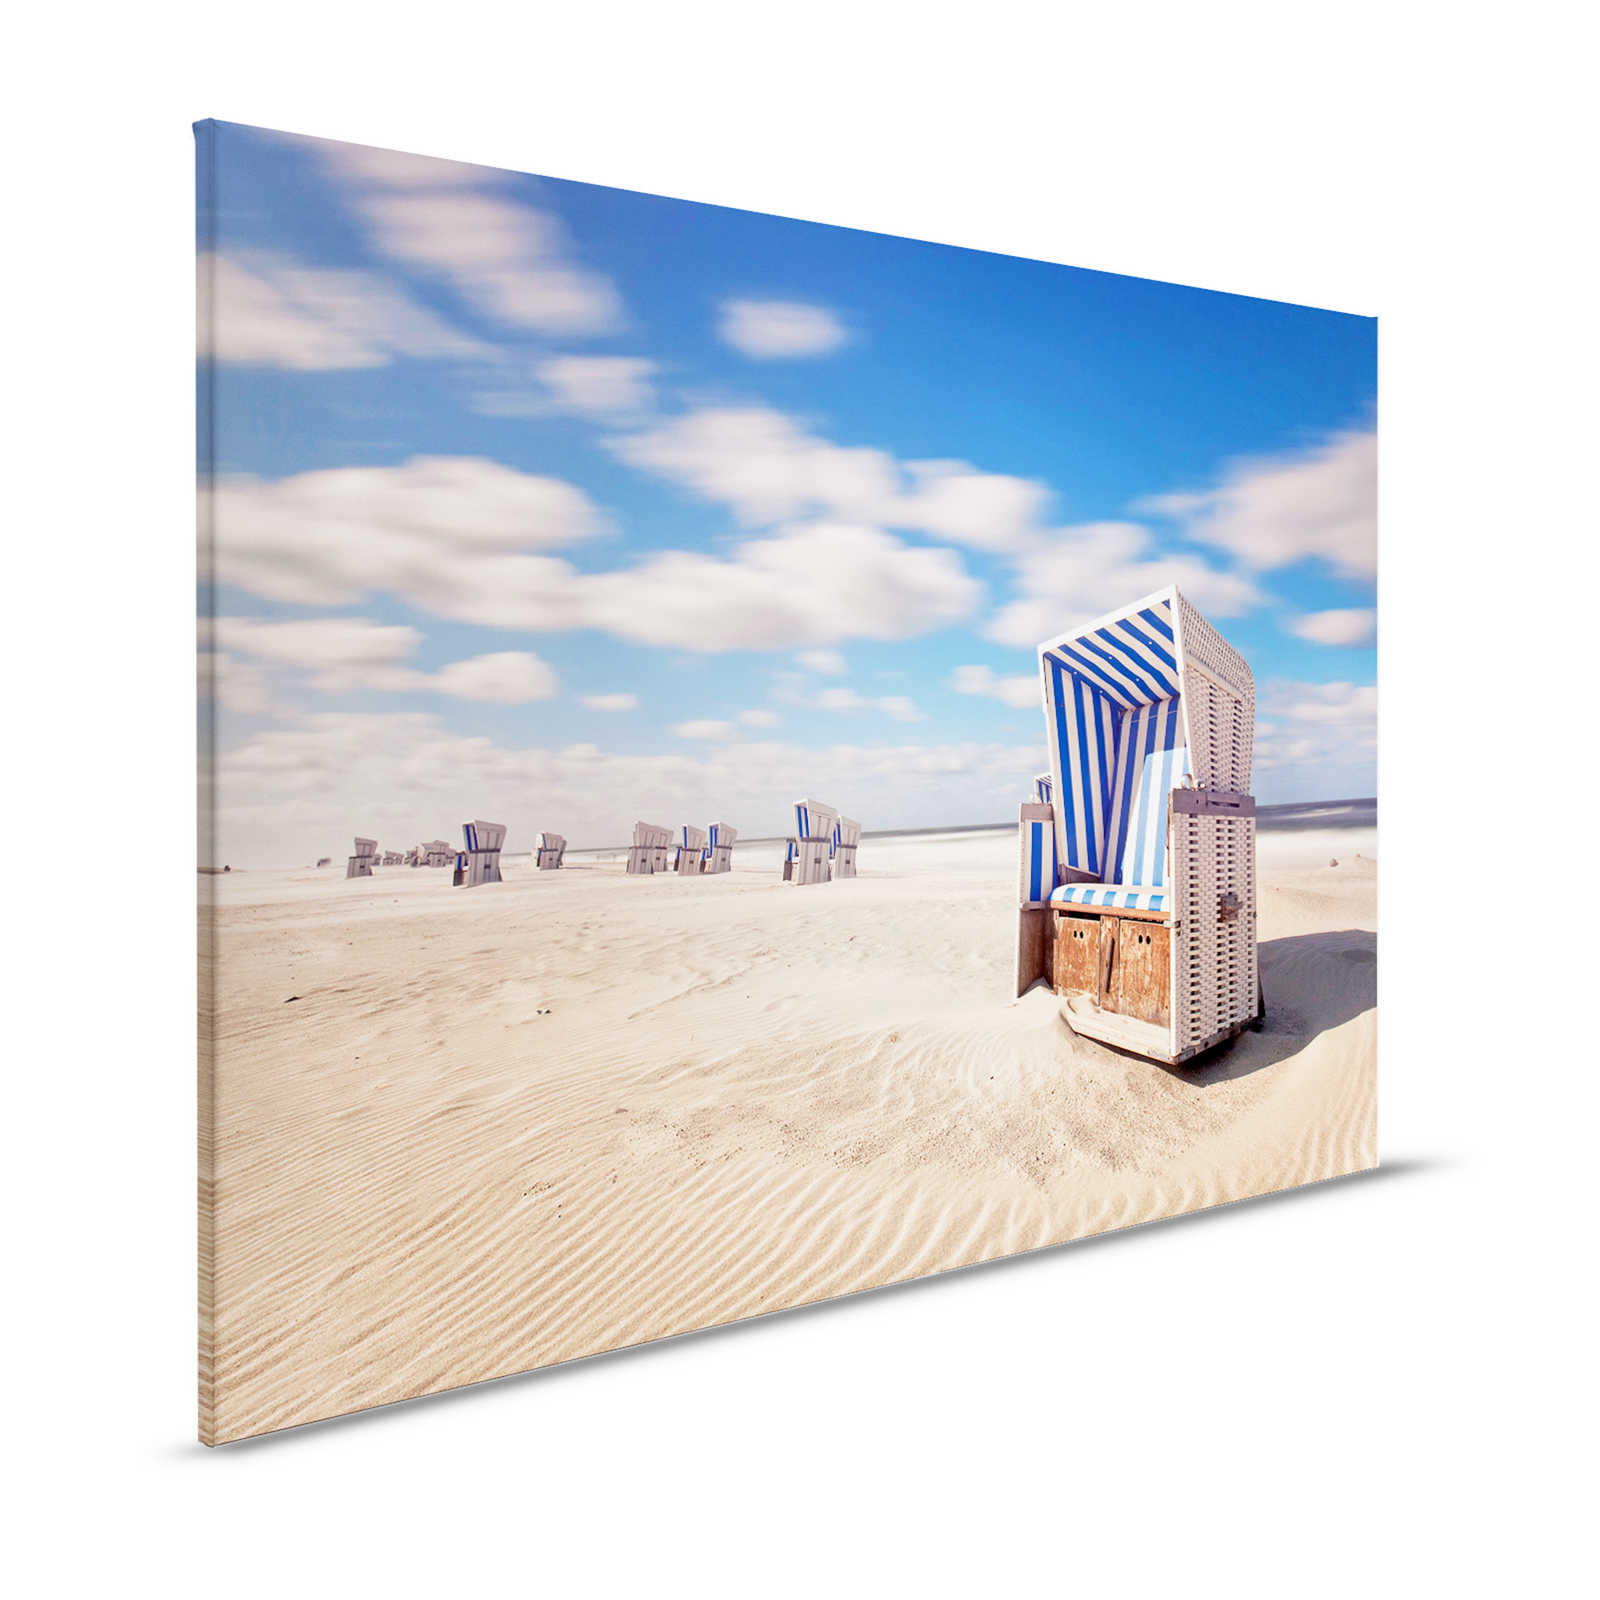 Silla de playa Pintura en lienzo Playa con nubes Cielo - 1,20 m x 0,80 m
